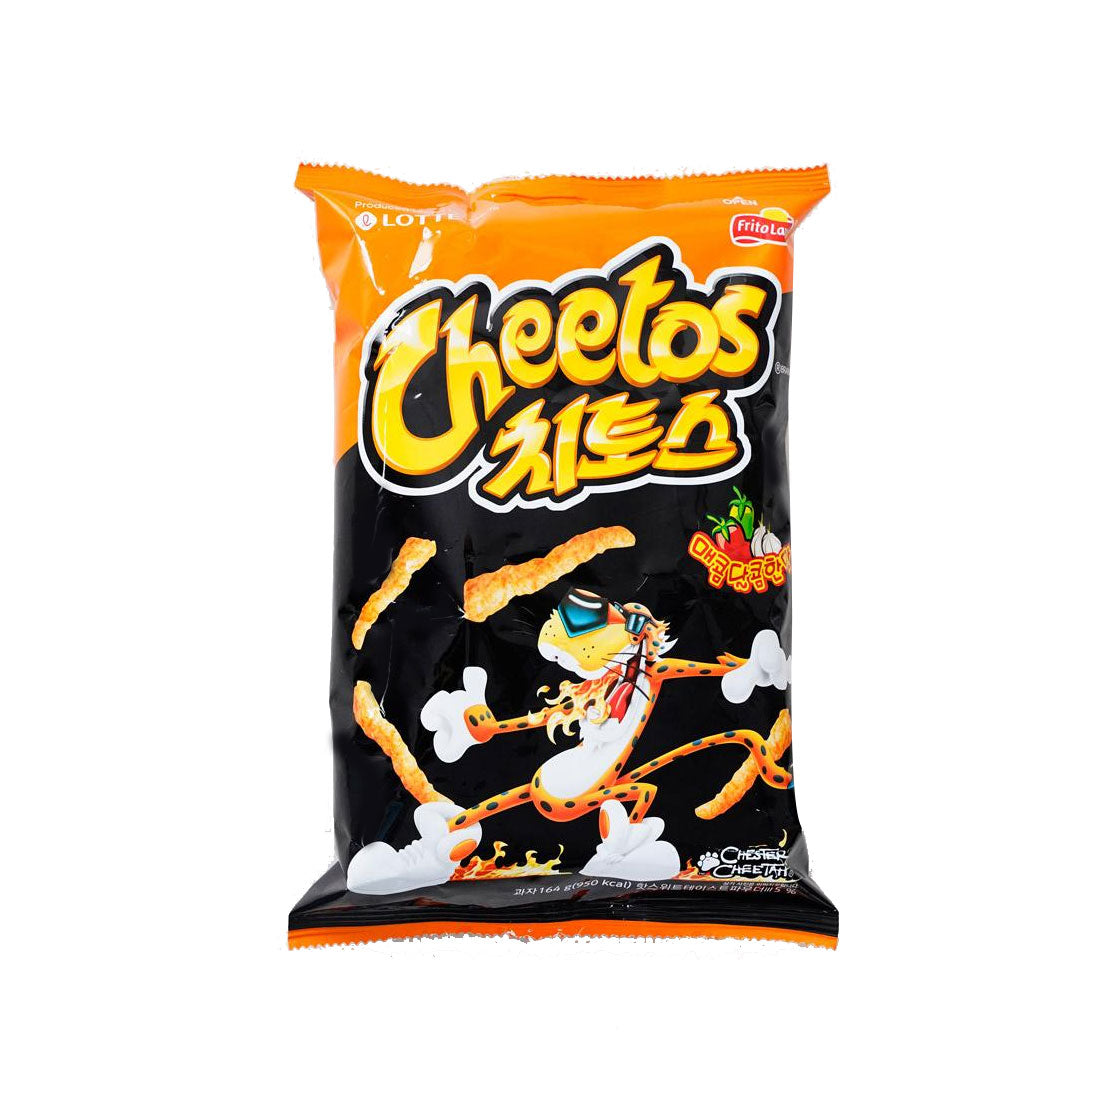 Cheetos(Spicy) 16/88g  치토스(매콤한 맛)